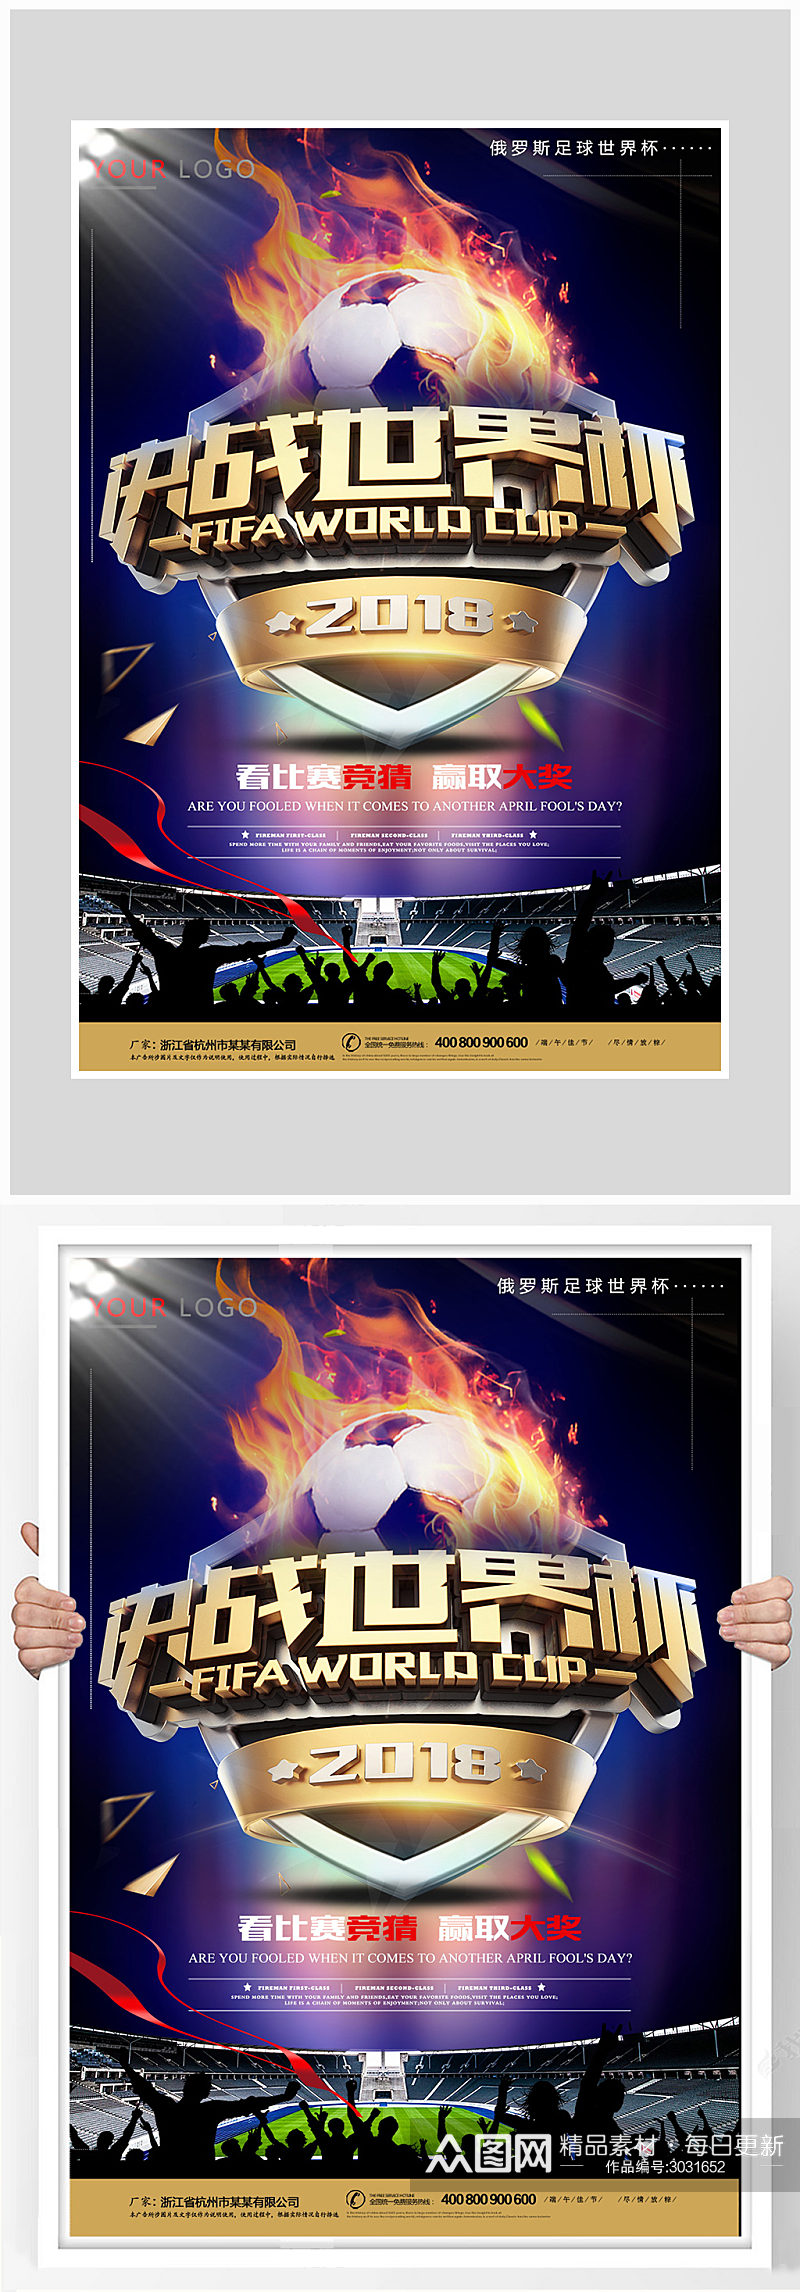 挑战世界杯足球比赛海报设计素材